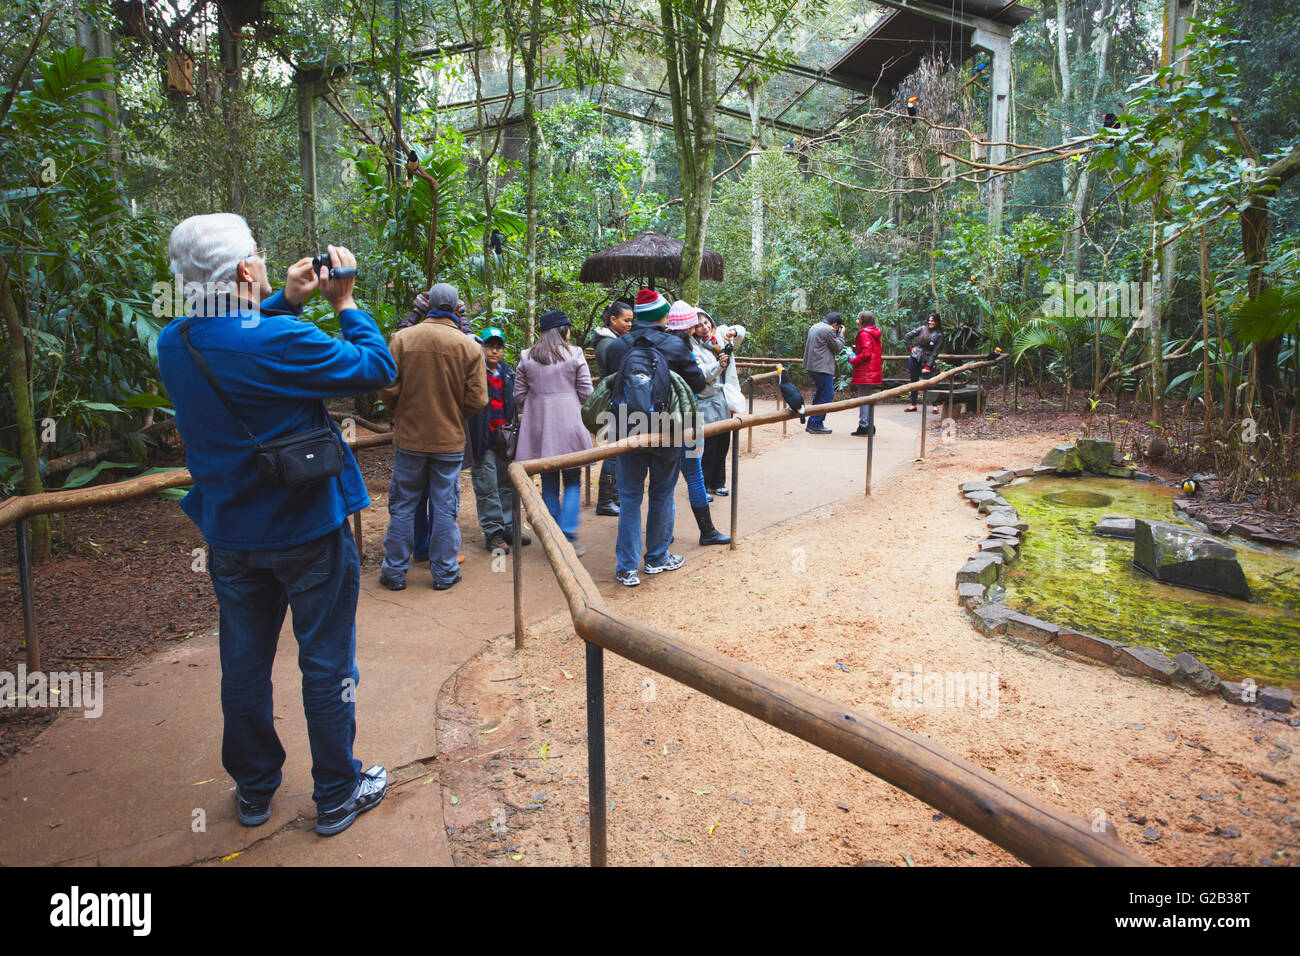 Les gens à l'intérieur de Marche-en cage au Parque das Aves (Parc des Oiseaux), Iguacu, Parana, Brésil Banque D'Images